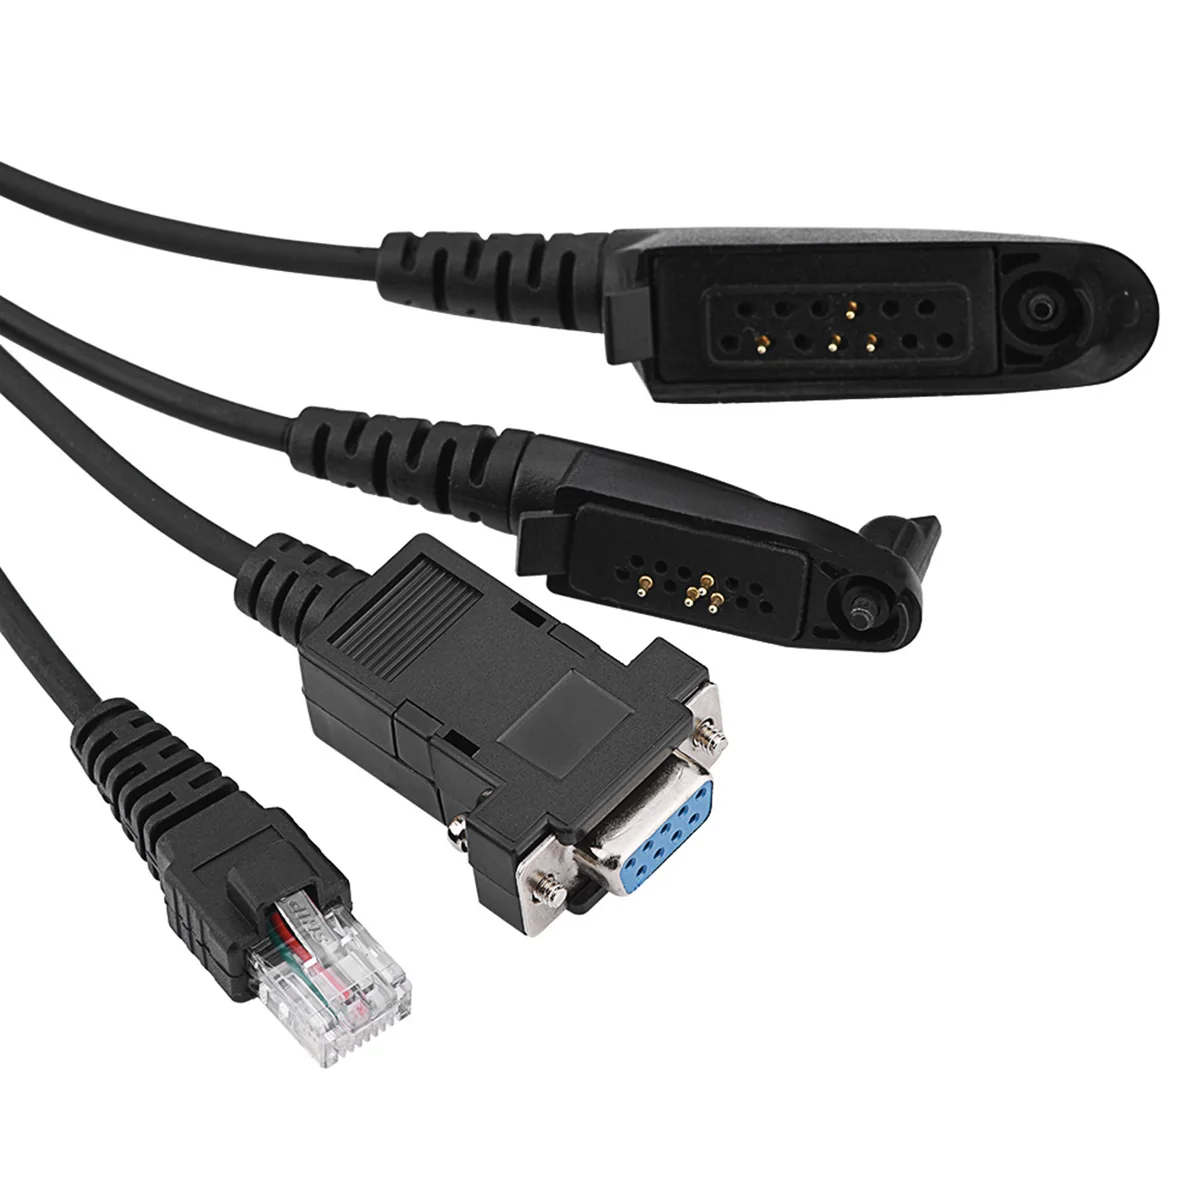 SOONHUA Универсальный ребристый Кабель для программирования 5в1 кабели для программирования для Motorola GP300/GP88S/GP328/GP328PLUS рация